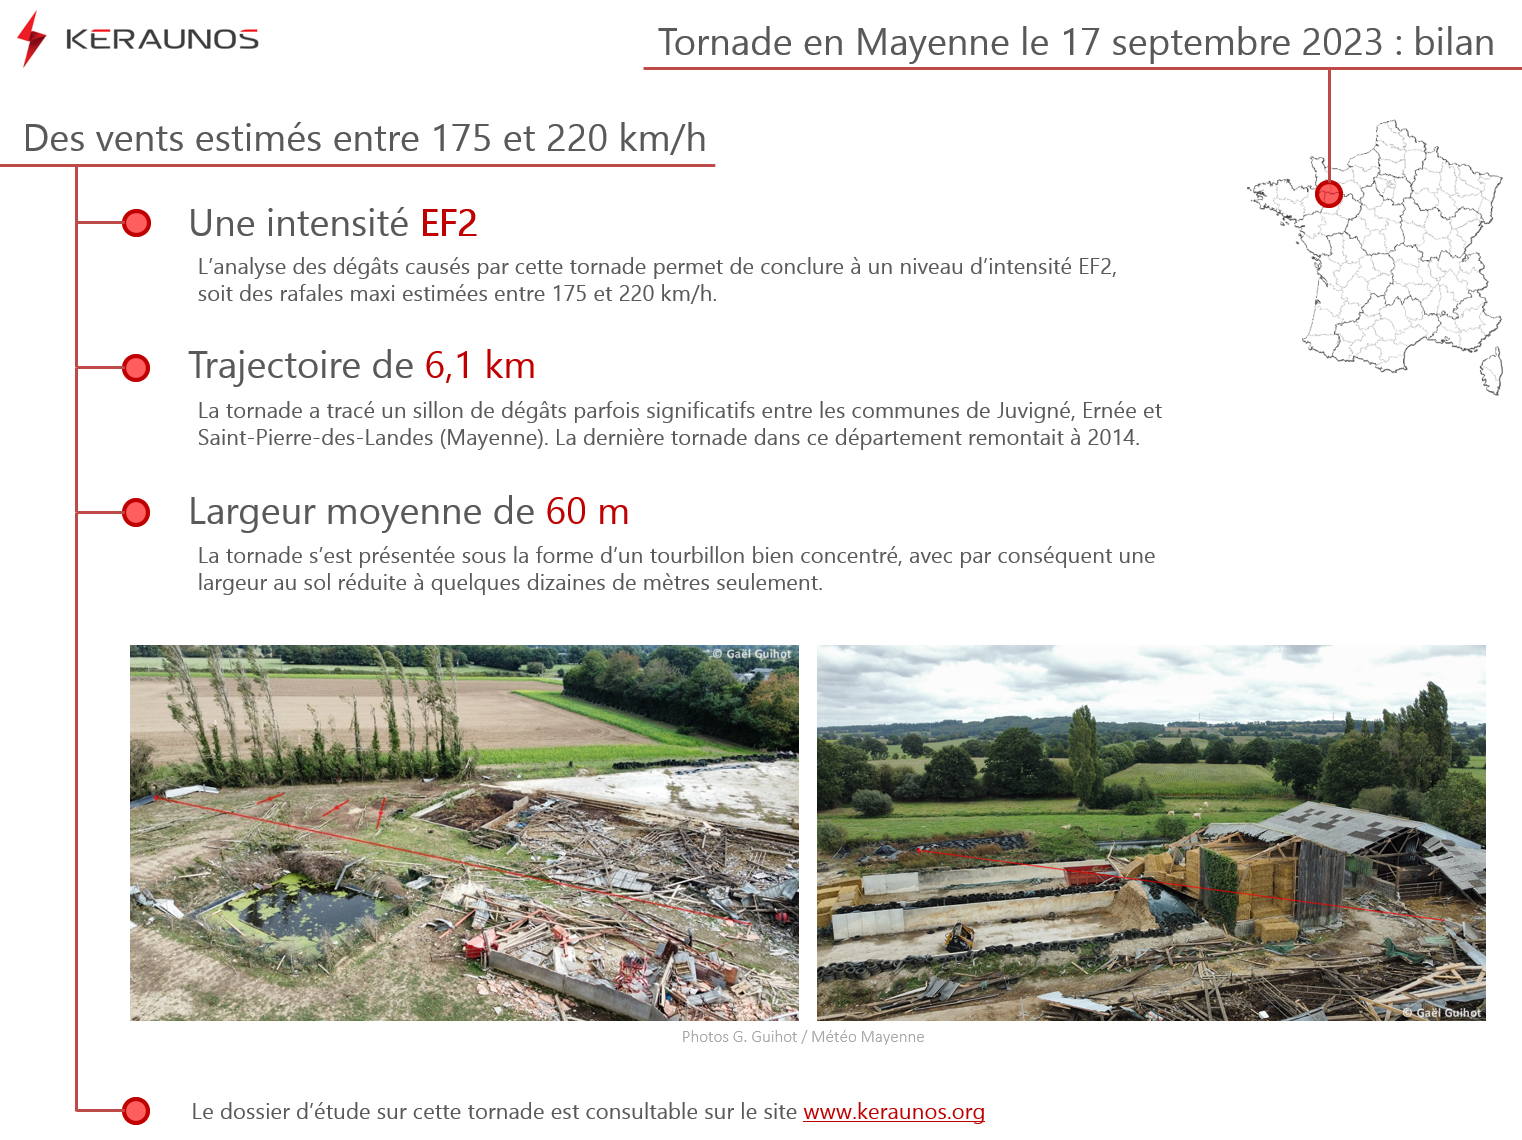 <p>Le dossier sur la tornade qui a frappé la Mayenne le 17 septembre dernier vient d'être publié. L'analyse des dégâts permet de conclure à une intensité EF2, soit des rafales max de 175 à 220 km/h. Le tourbillon a tracé un couloir de dommages long de 6,1 km et large de 60m.</p>